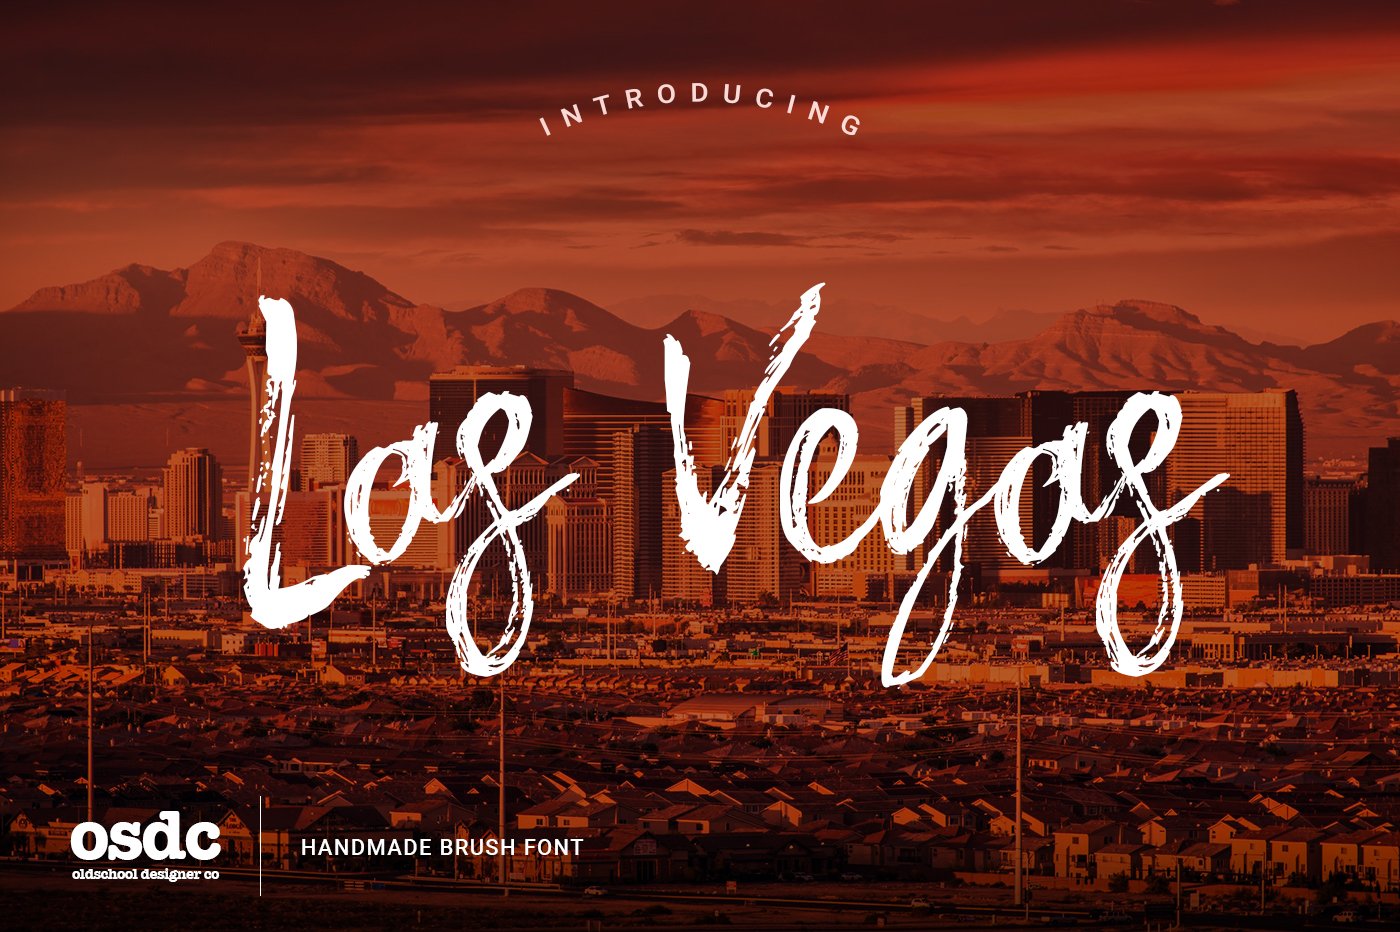 Las Vegas Brush Font cover image.